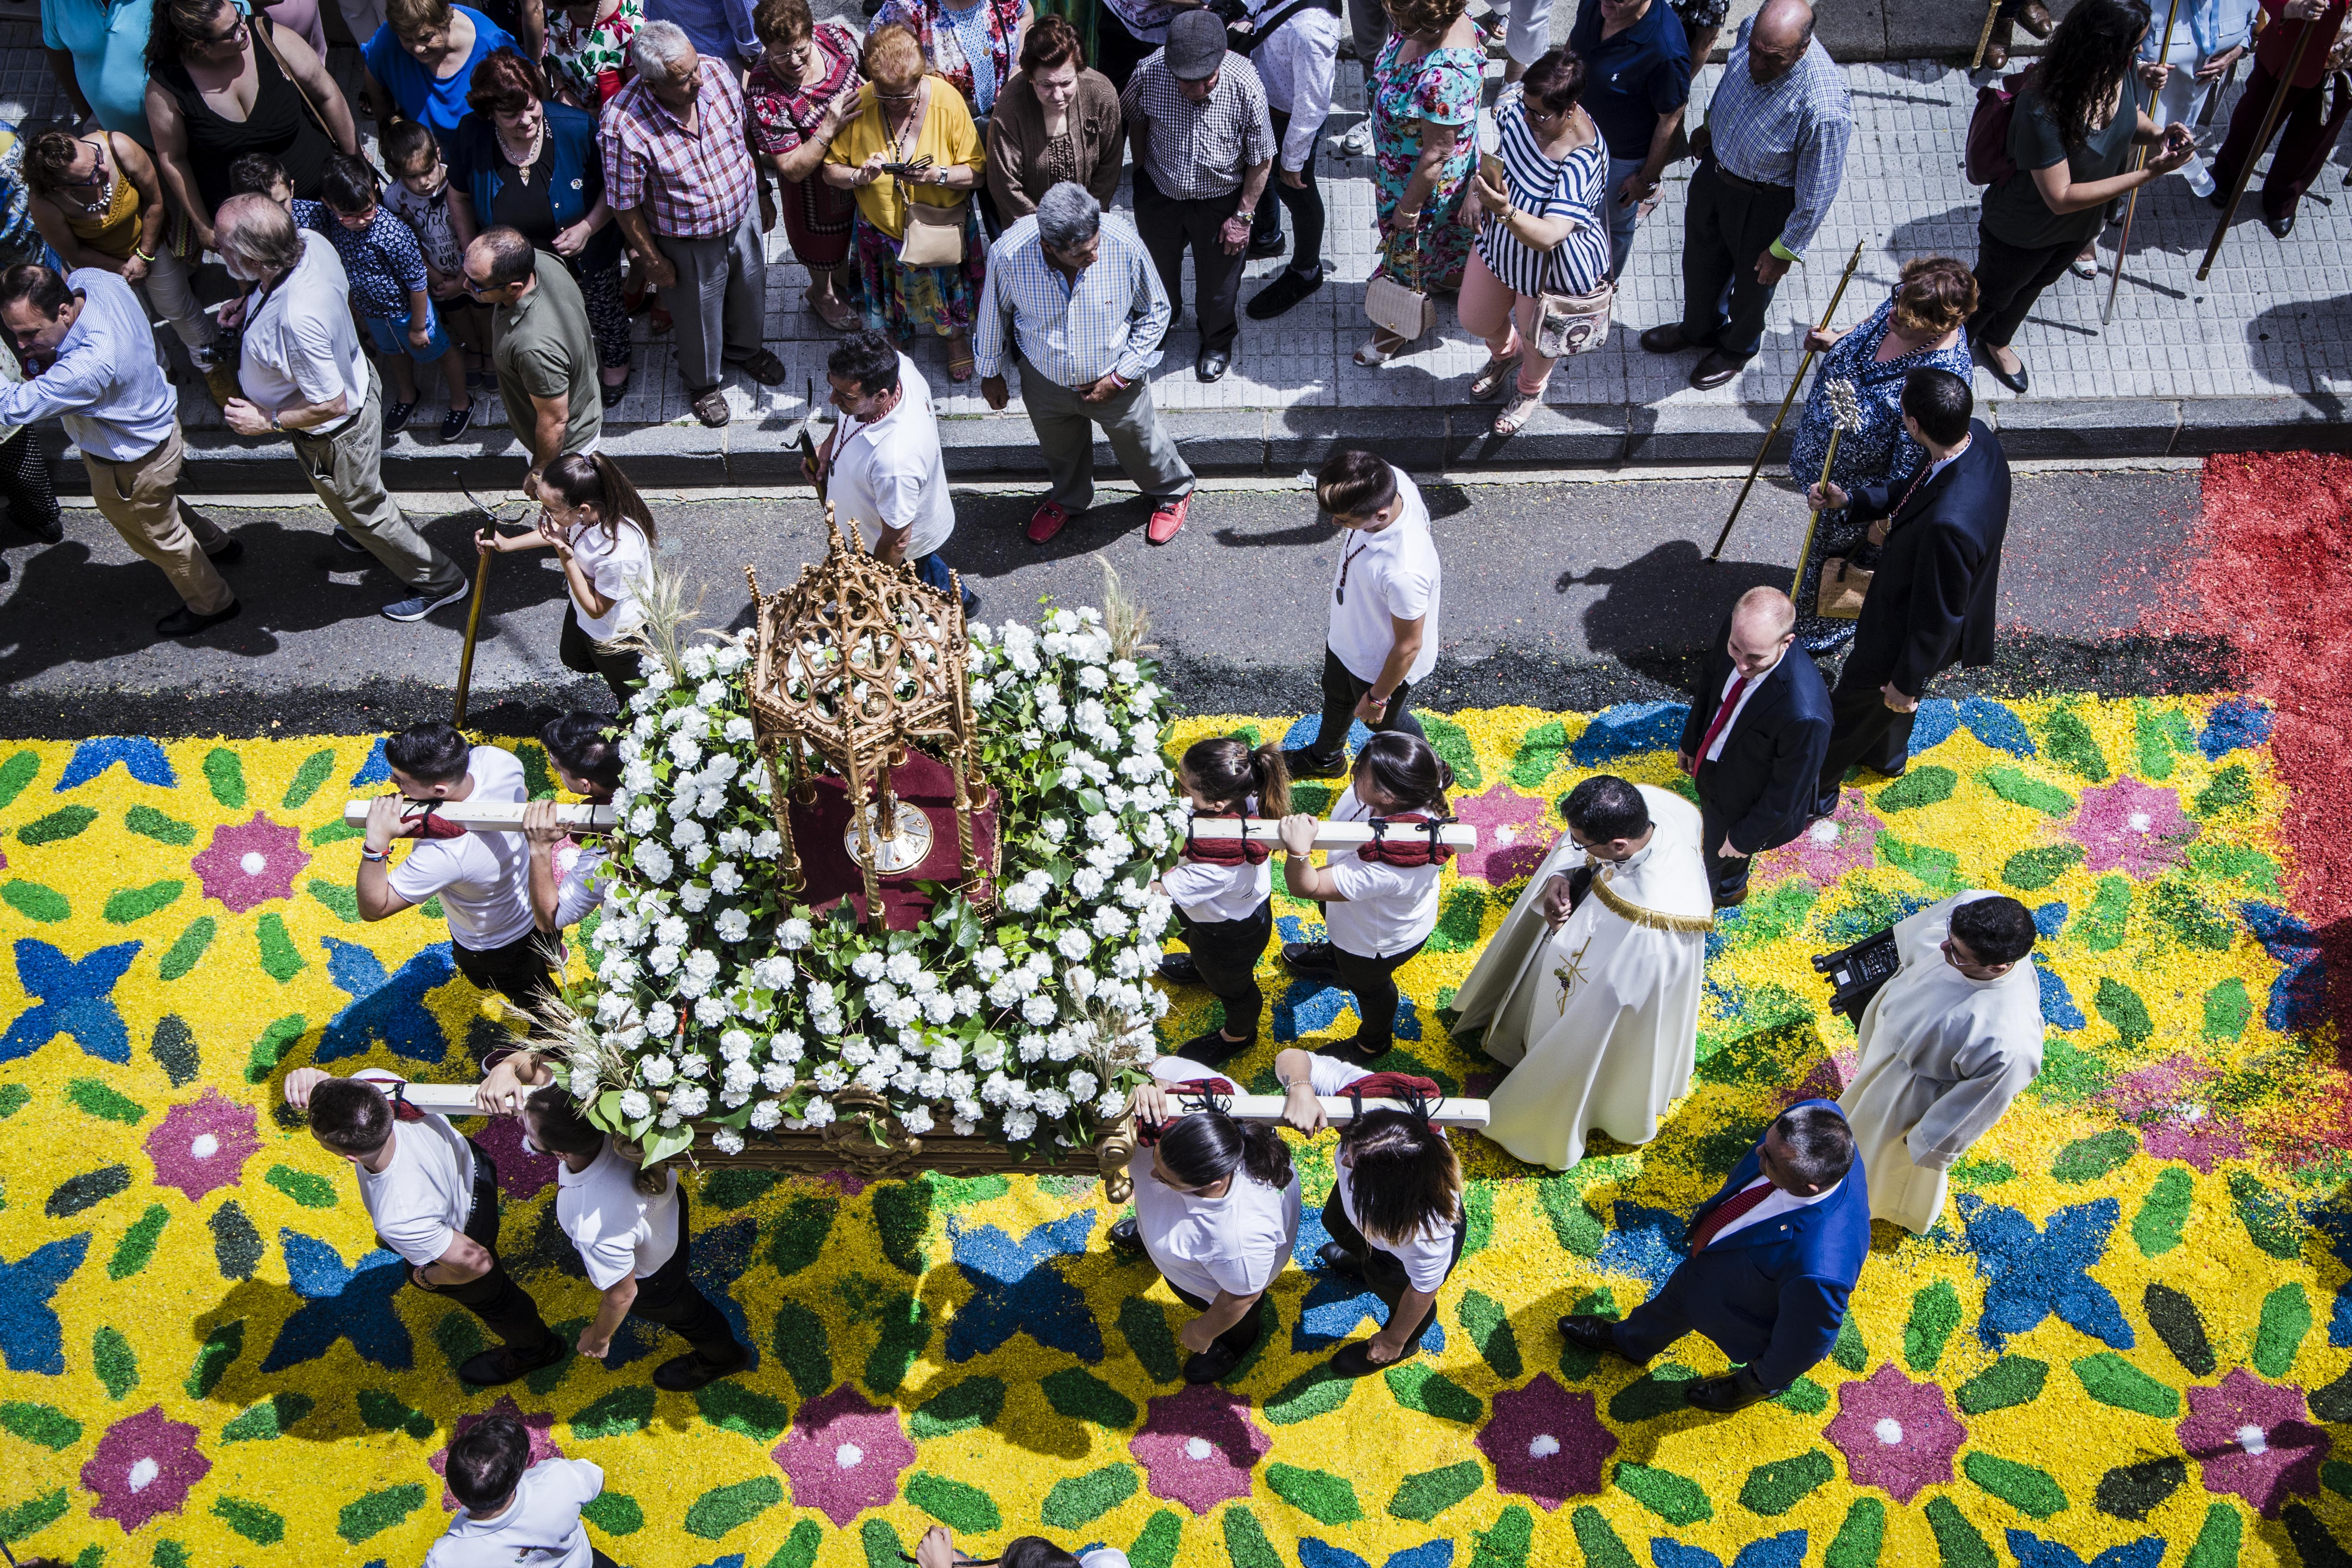 Miles de personas abarrotan San Vicente de Alcántara atraídas por el esplendor de su Corpus Christi